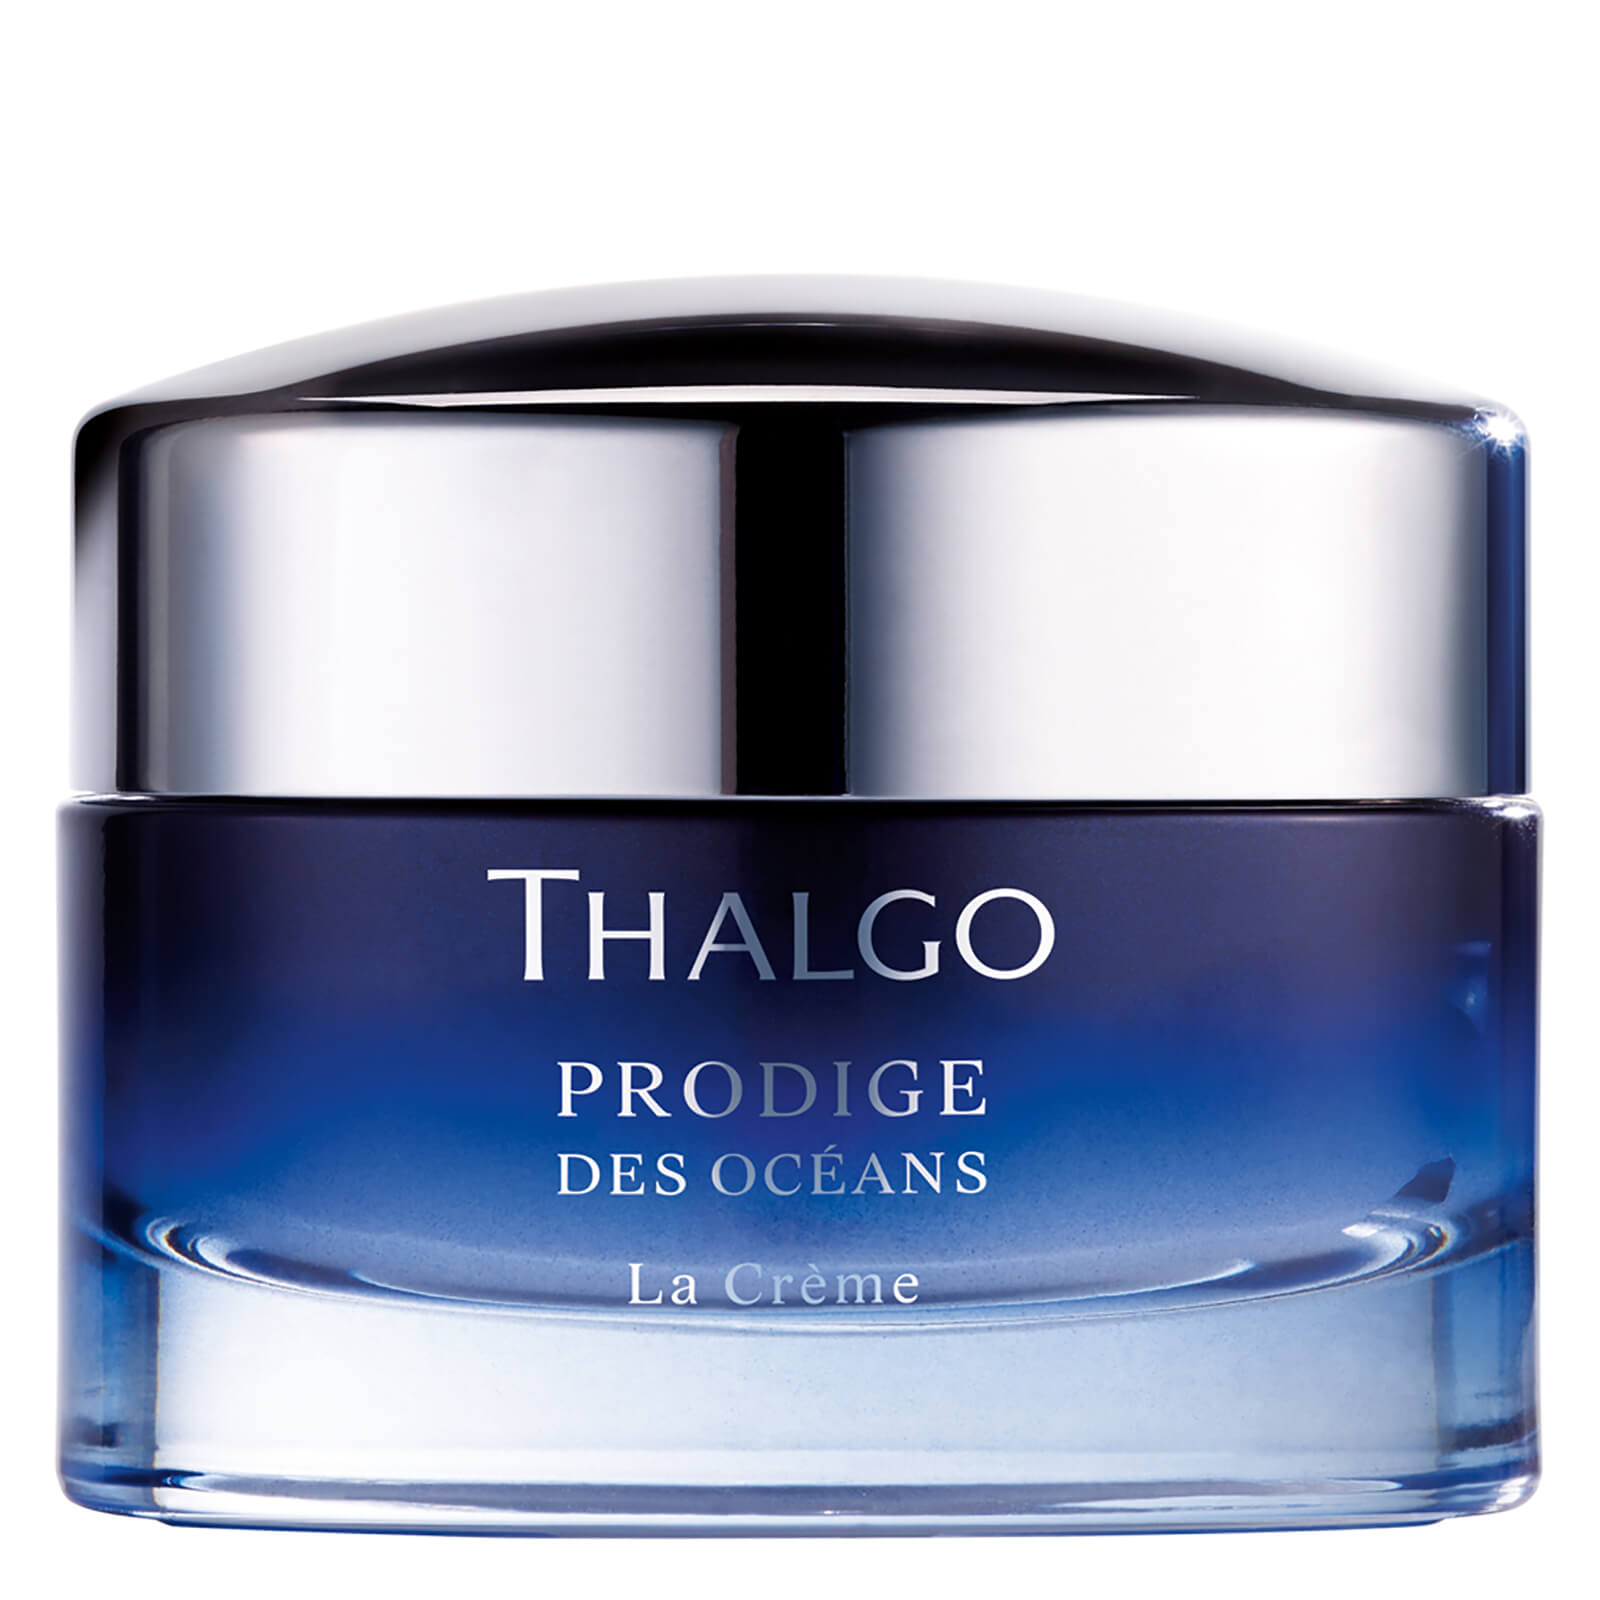 Thalgo Prodige des Oceans Cream lookfantastic.com imagine